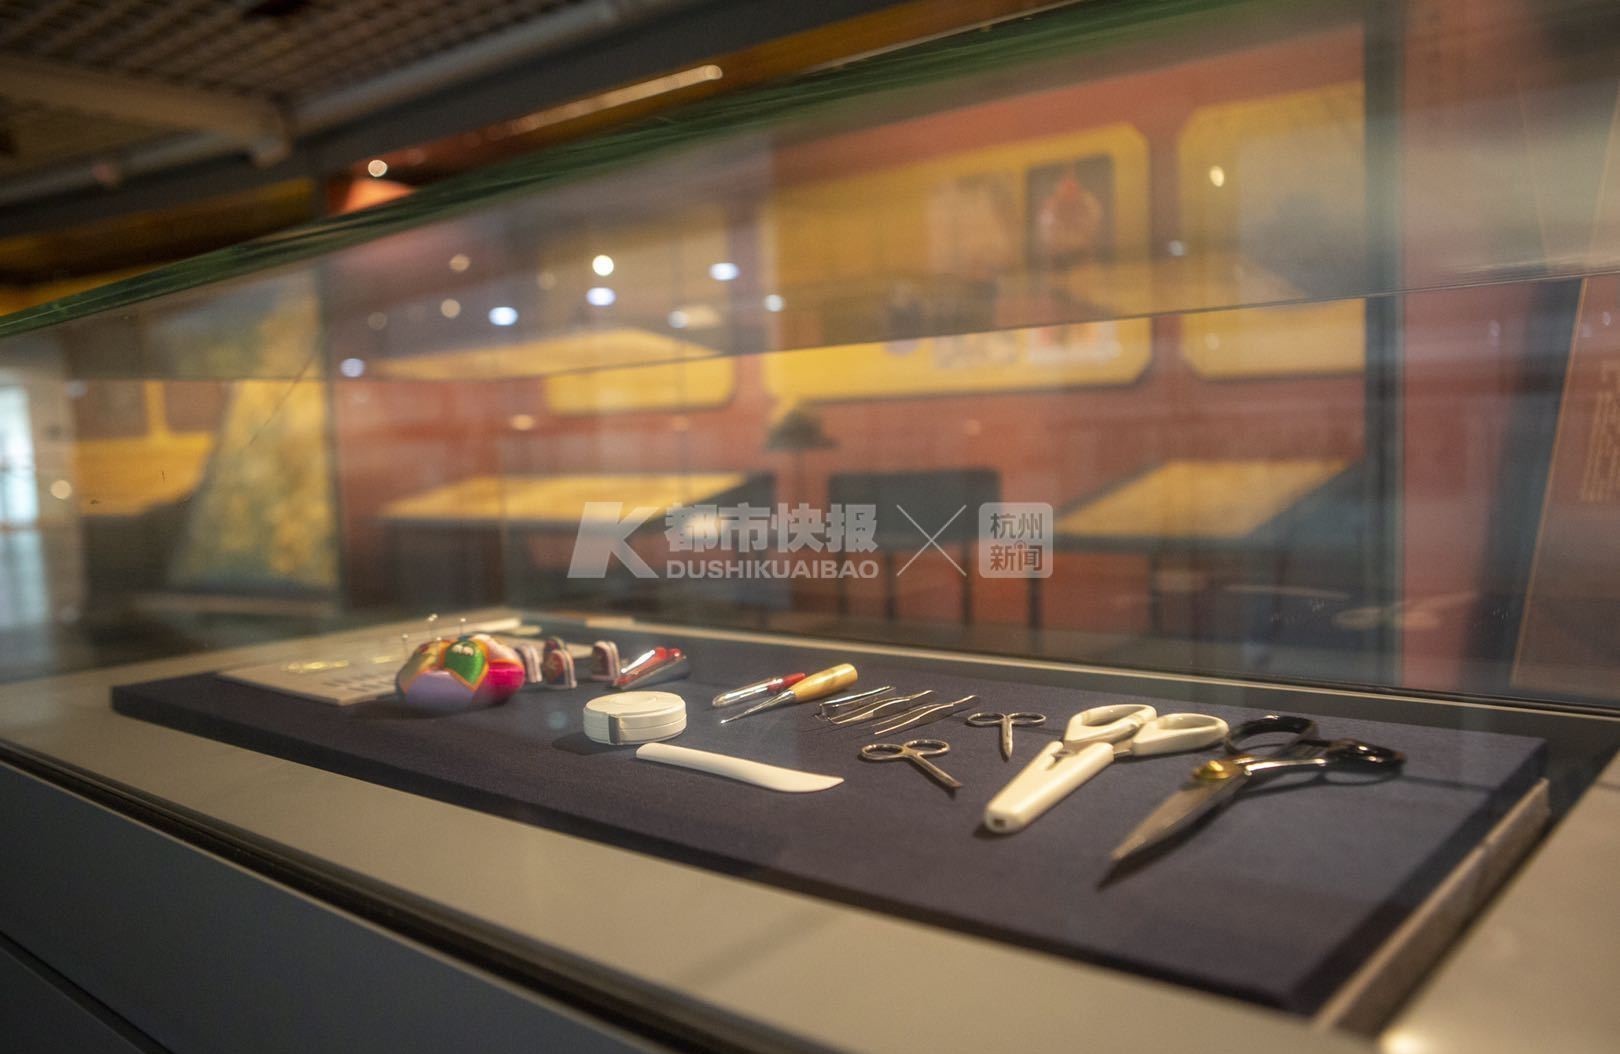 慈禧入葬时穿的龙袍,"香妃"的荷包!中国丝绸博物馆清东陵文物修复展